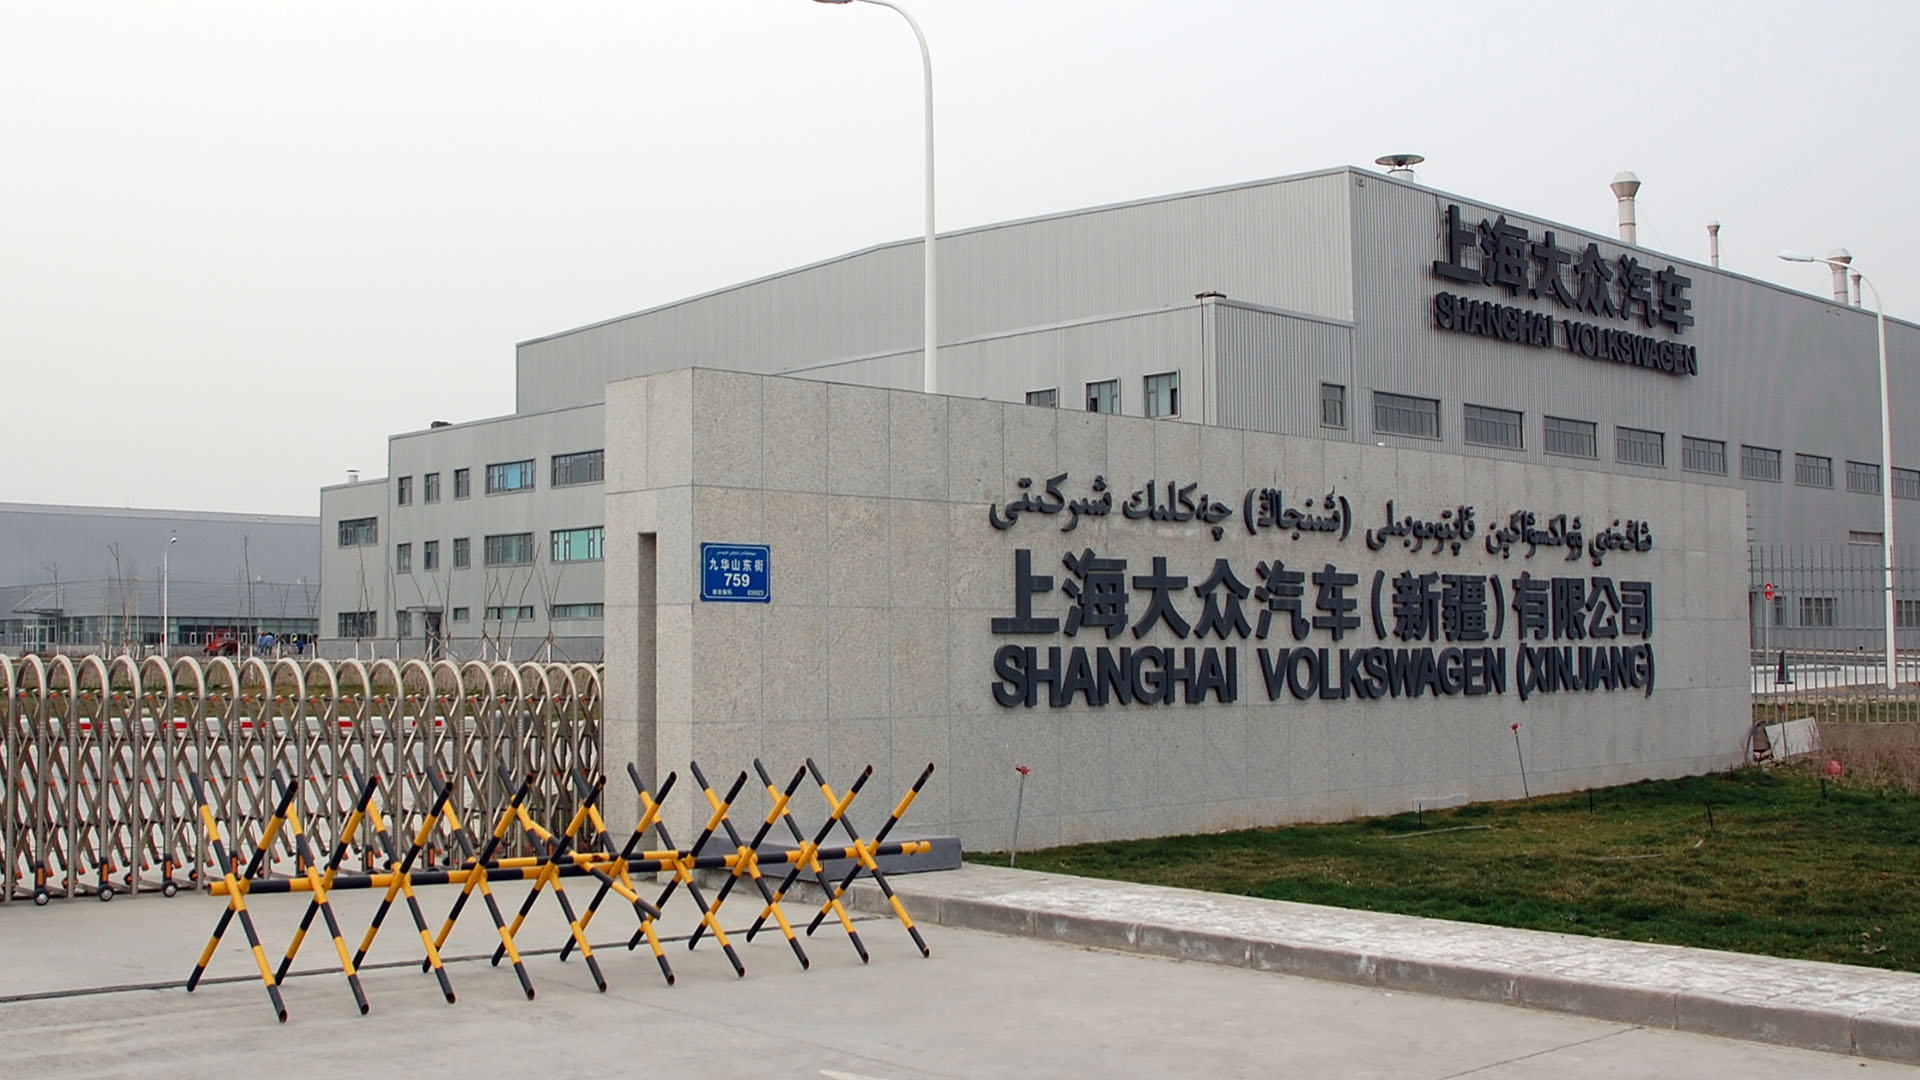 Werk von Volkswagen im westchinesischen Urumqi (Xinjiang). | picture alliance / dpa